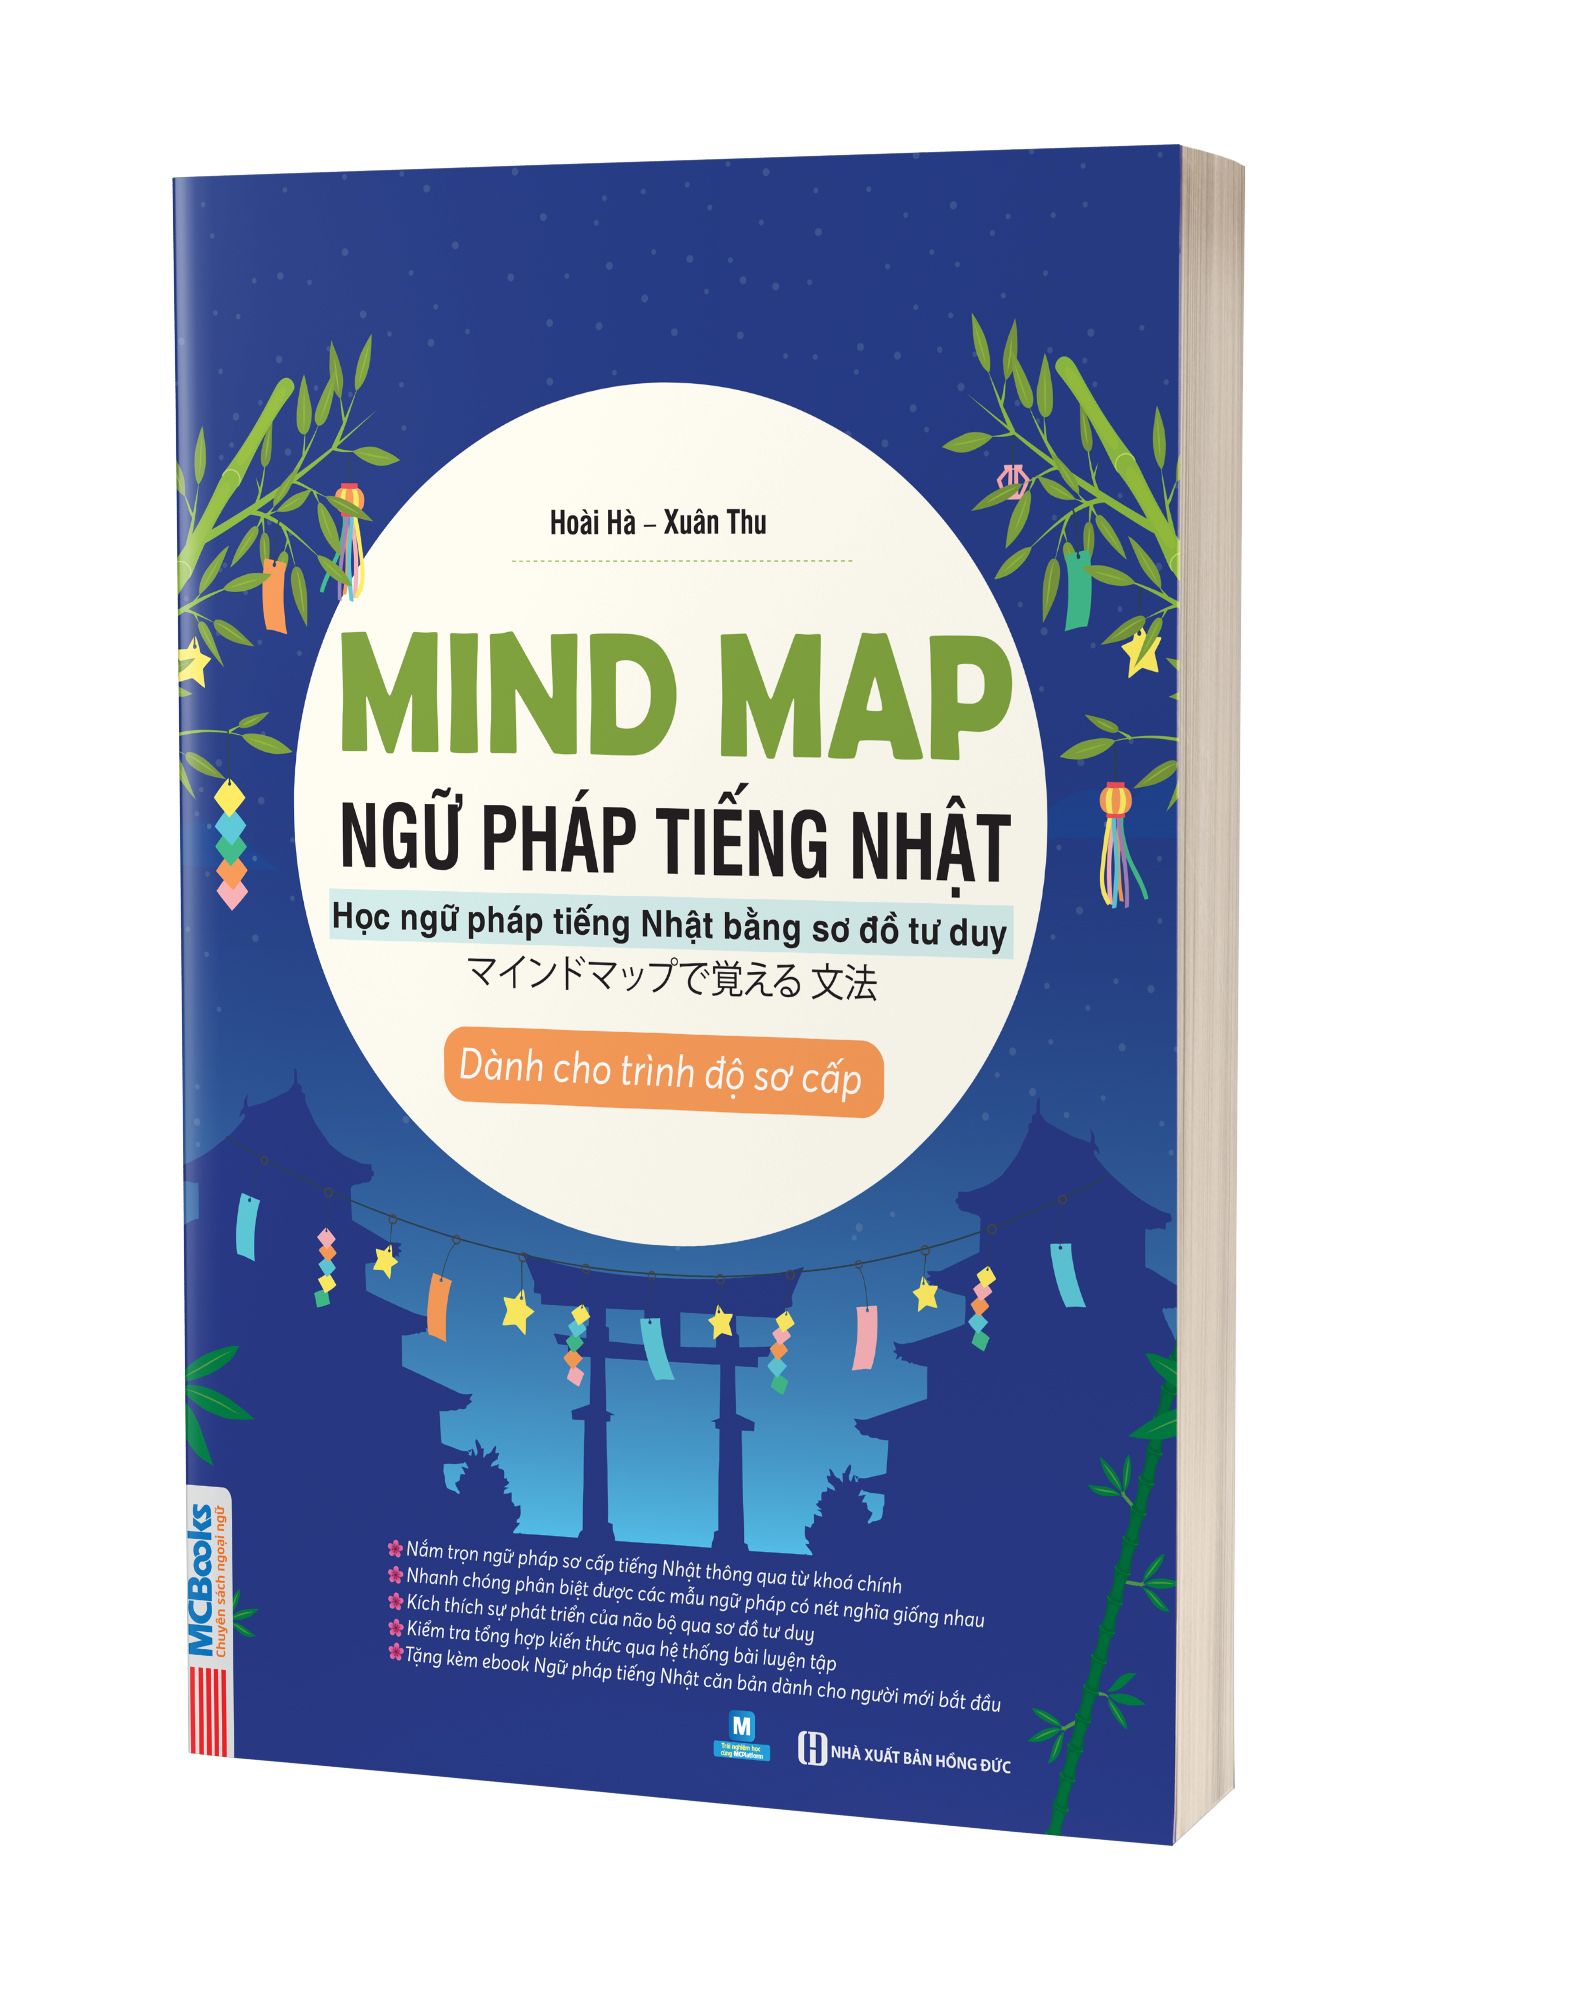 Mindmap Ngữ pháp tiếng Nhật - Học ngữ pháp tiếng Nhật bằng sơ đồ tư duy - Dành cho trình độ sơ cấp